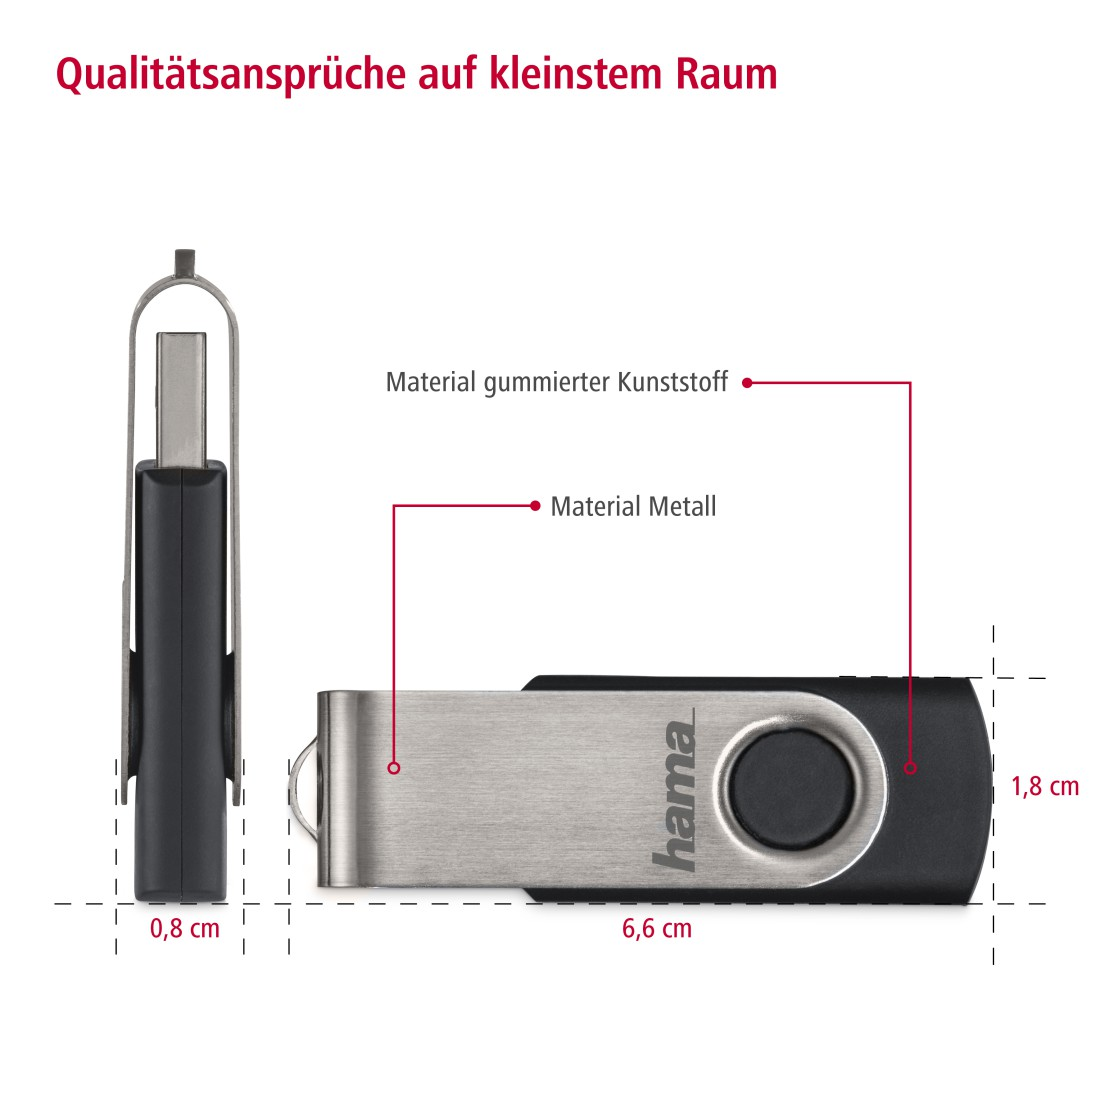 HAMA MB/s, USB-Stick, GB, 10 32 Schwarz/Silber Rotate